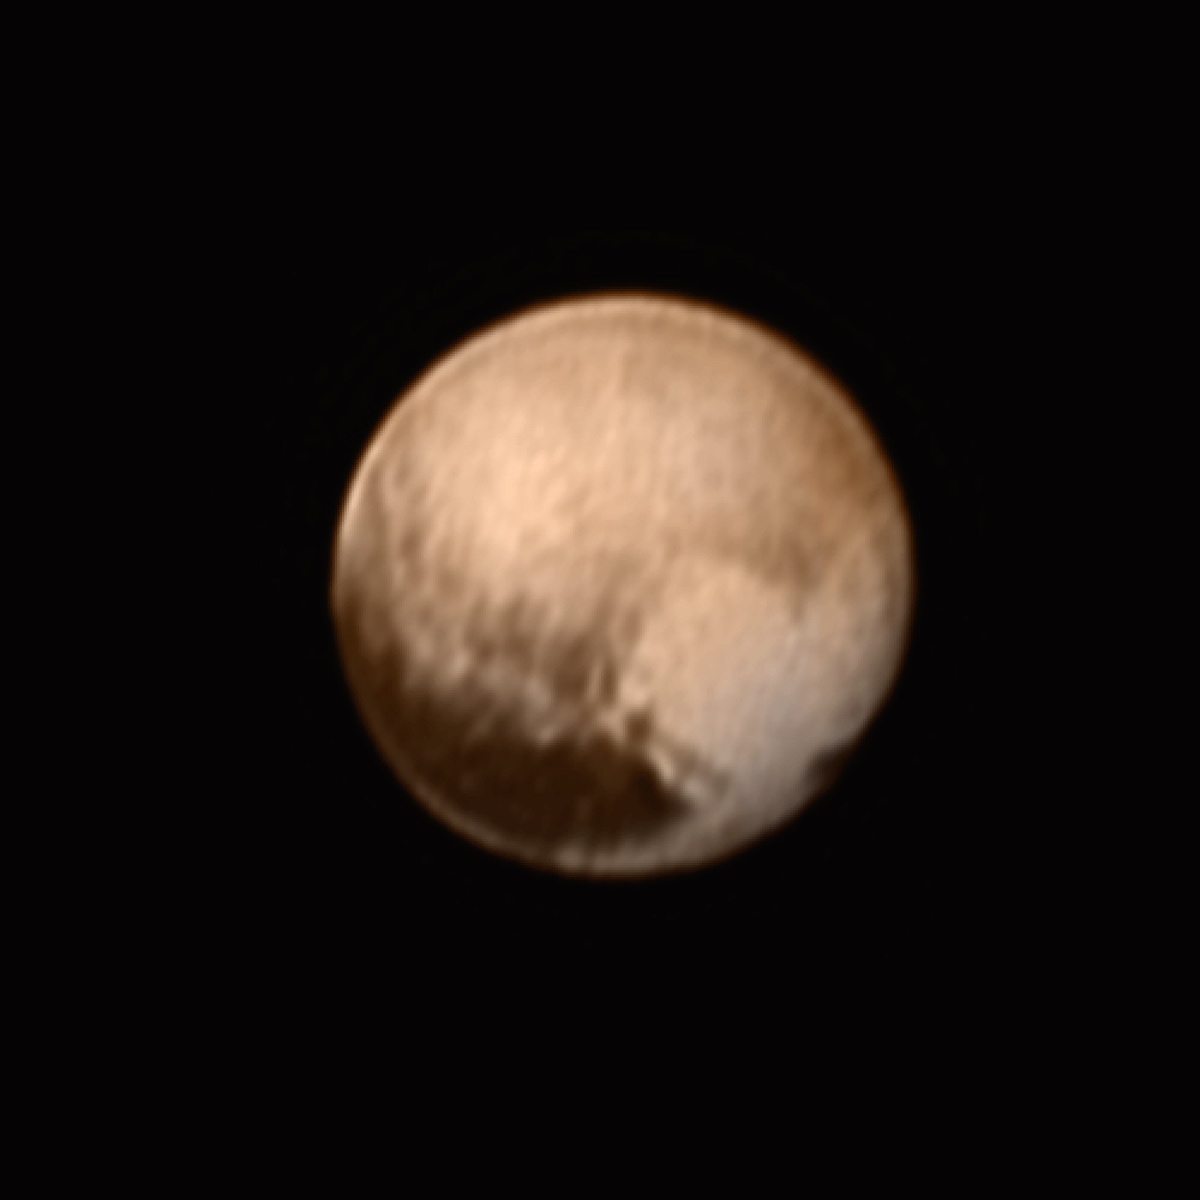 Nouvelle image de Pluton prise le 7 juillet avec le télescope Lorri de la sonde New Horizons. La région claire en forme de cœur sera survolée par la sonde spatiale le 14 juillet prochain à 11 h 50 TU. La grande tache sombre en bas à gauche de Pluton a été surnommée la « Baleine ». © Nasa, JHUAPL, SwRI